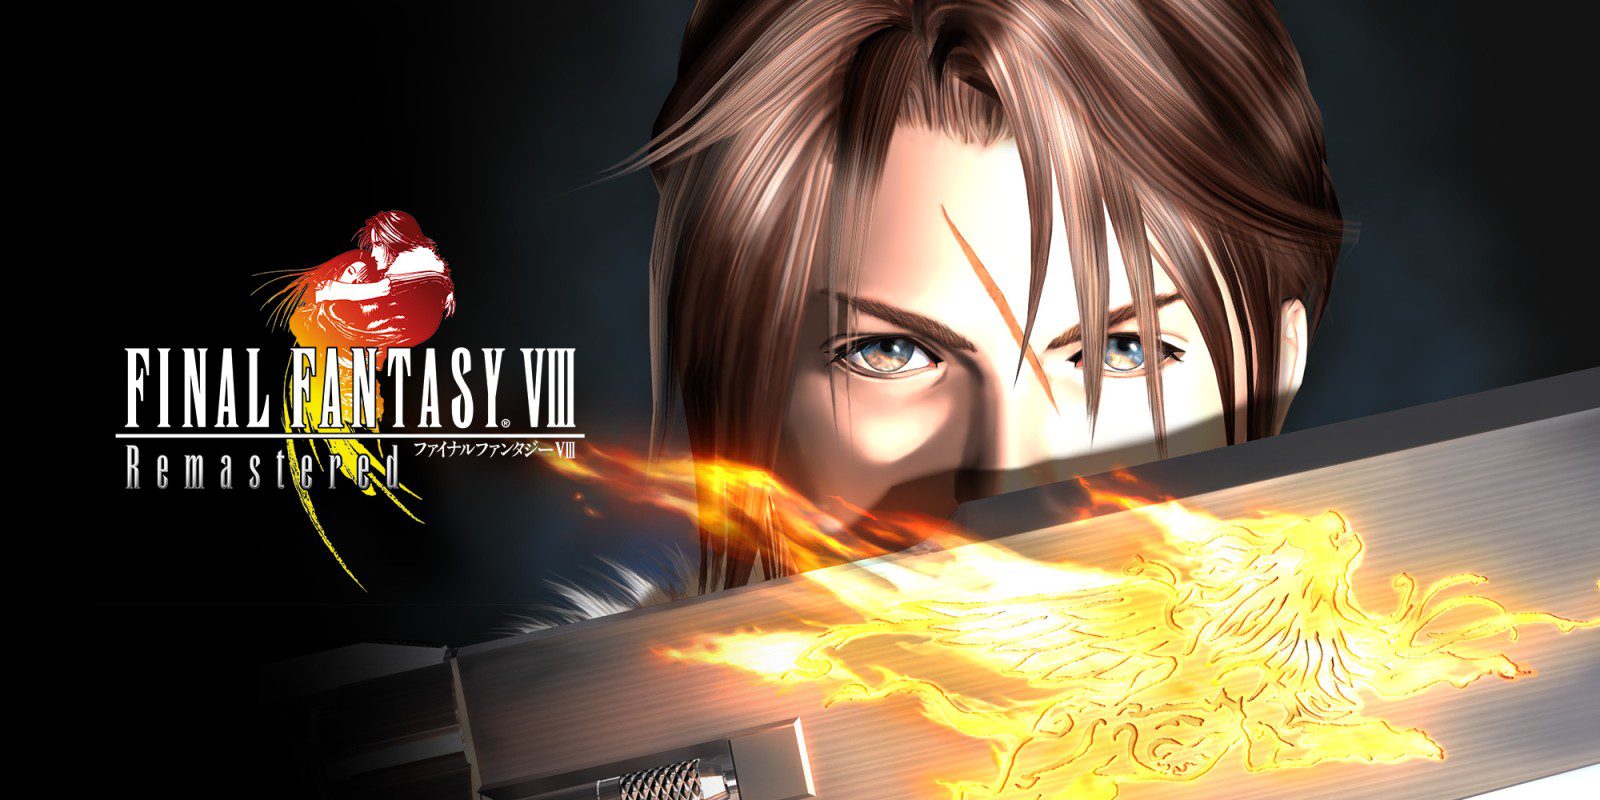 FINAL FANTASY VIII Remastered jetzt auf PC, PS4 und Switch - Trailer starten